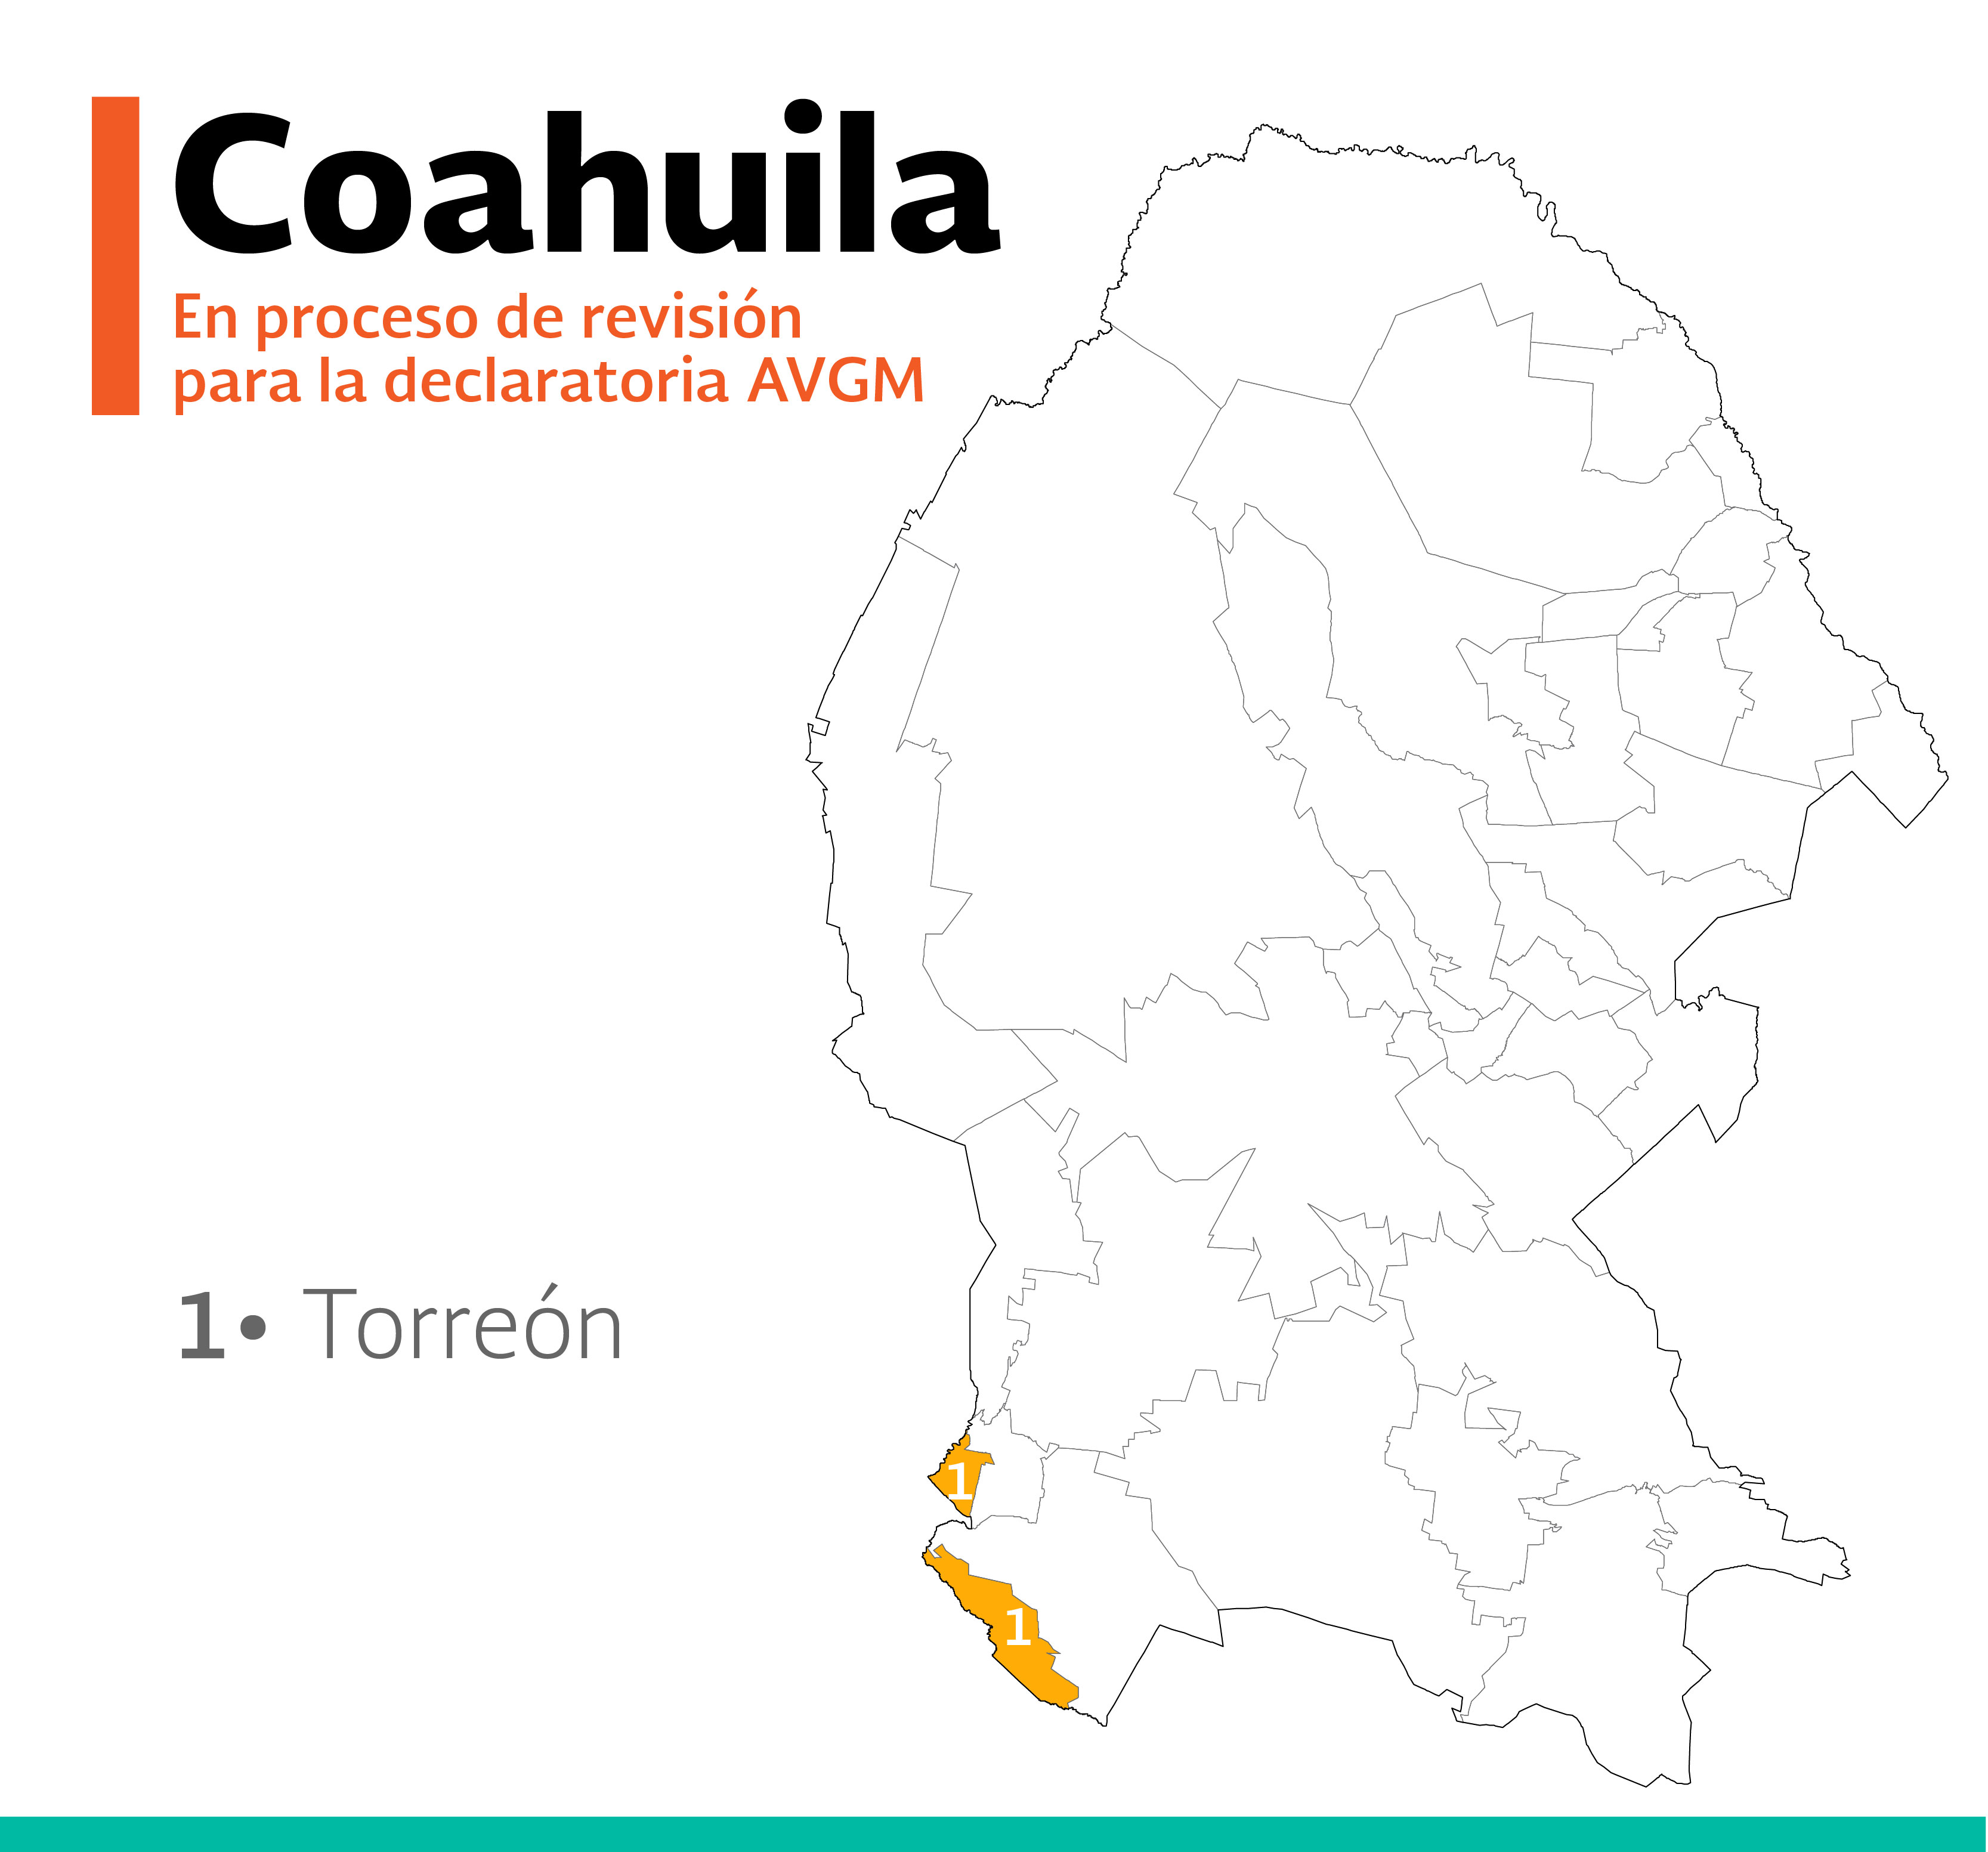 /cms/uploads/image/file/404928/Mapa_Coahuila-25.jpg